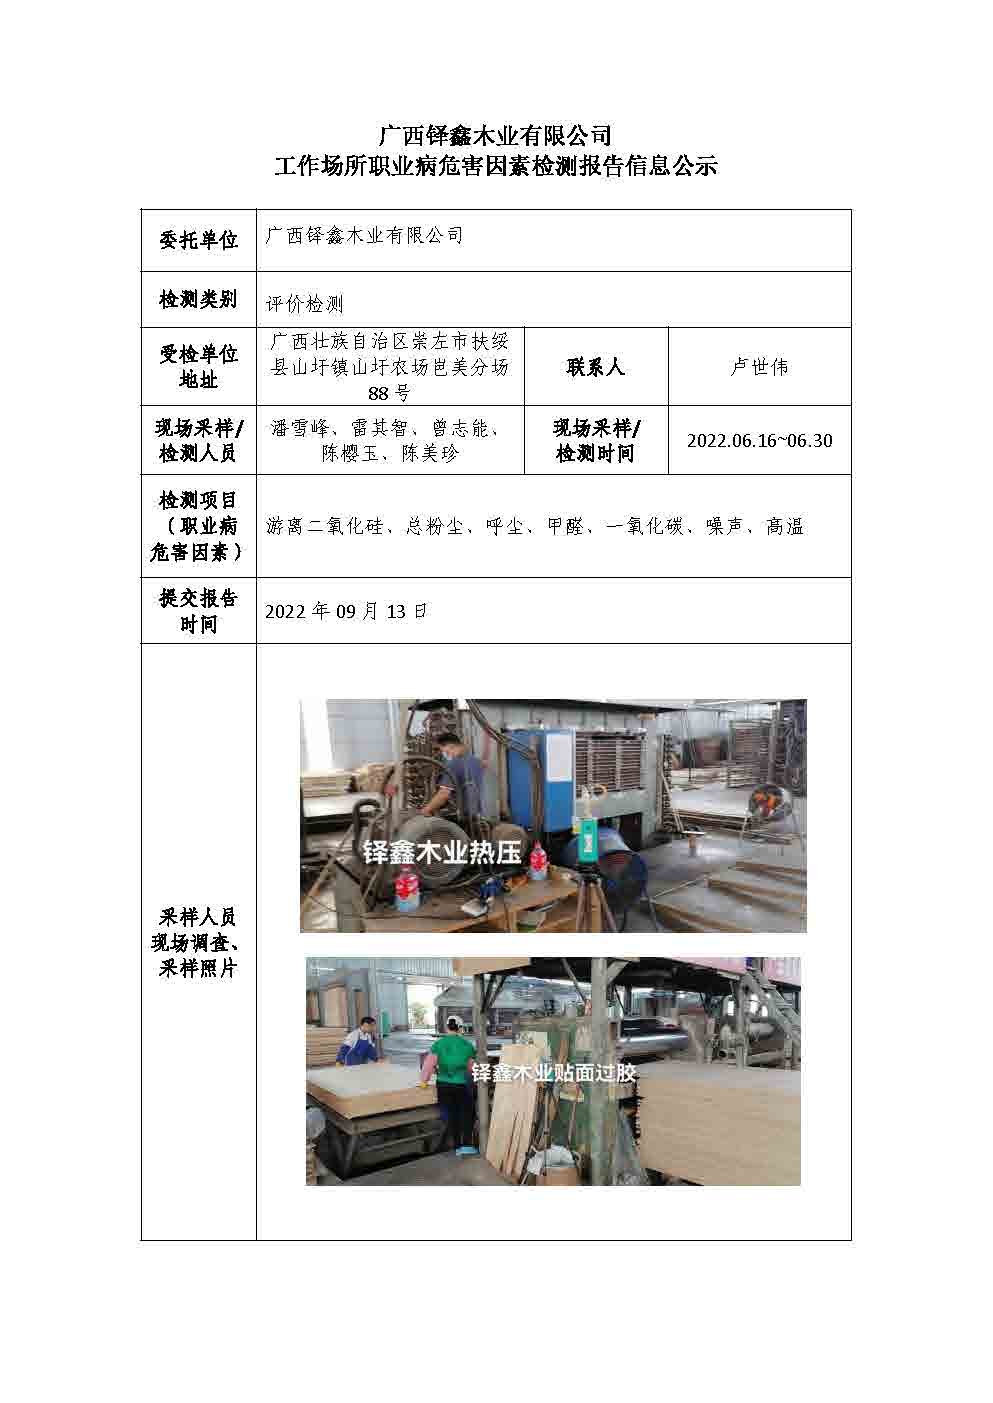 广西铎鑫木业有限公司工作场所职业病危害因素检测报告信息公示